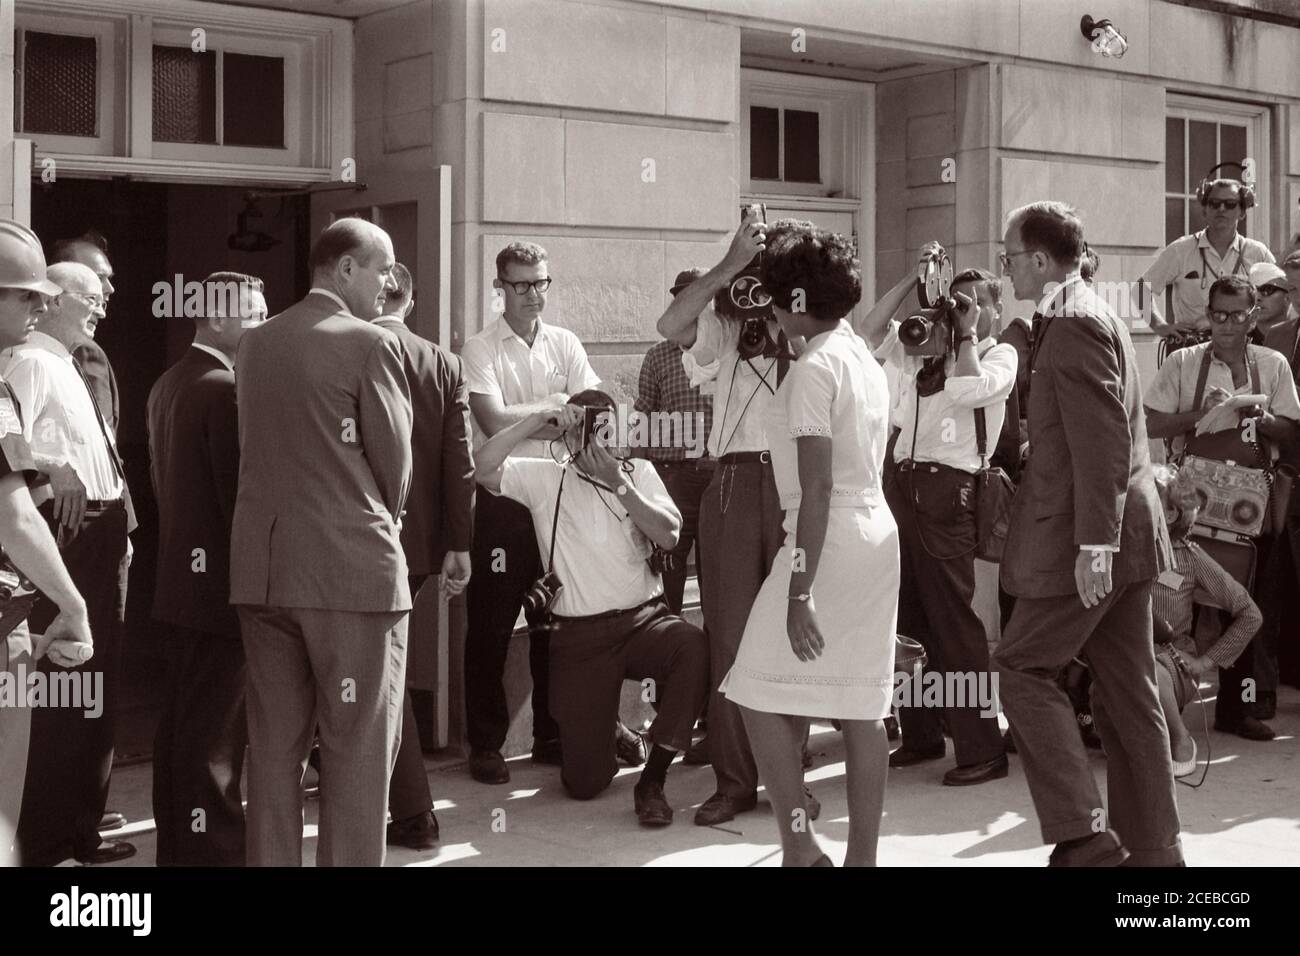 Vivian Malone, uno dei primi afroamericani a frequentare l'Università dell'Alabama, cammina attraverso una folla che comprende fotografi, membri della Guardia Nazionale, e vice procuratore generale degli Stati Uniti Nicholas Katzenbach, per entrare Foster Auditorium per registrarsi per le classi il 11 giugno 1963. Foto Stock